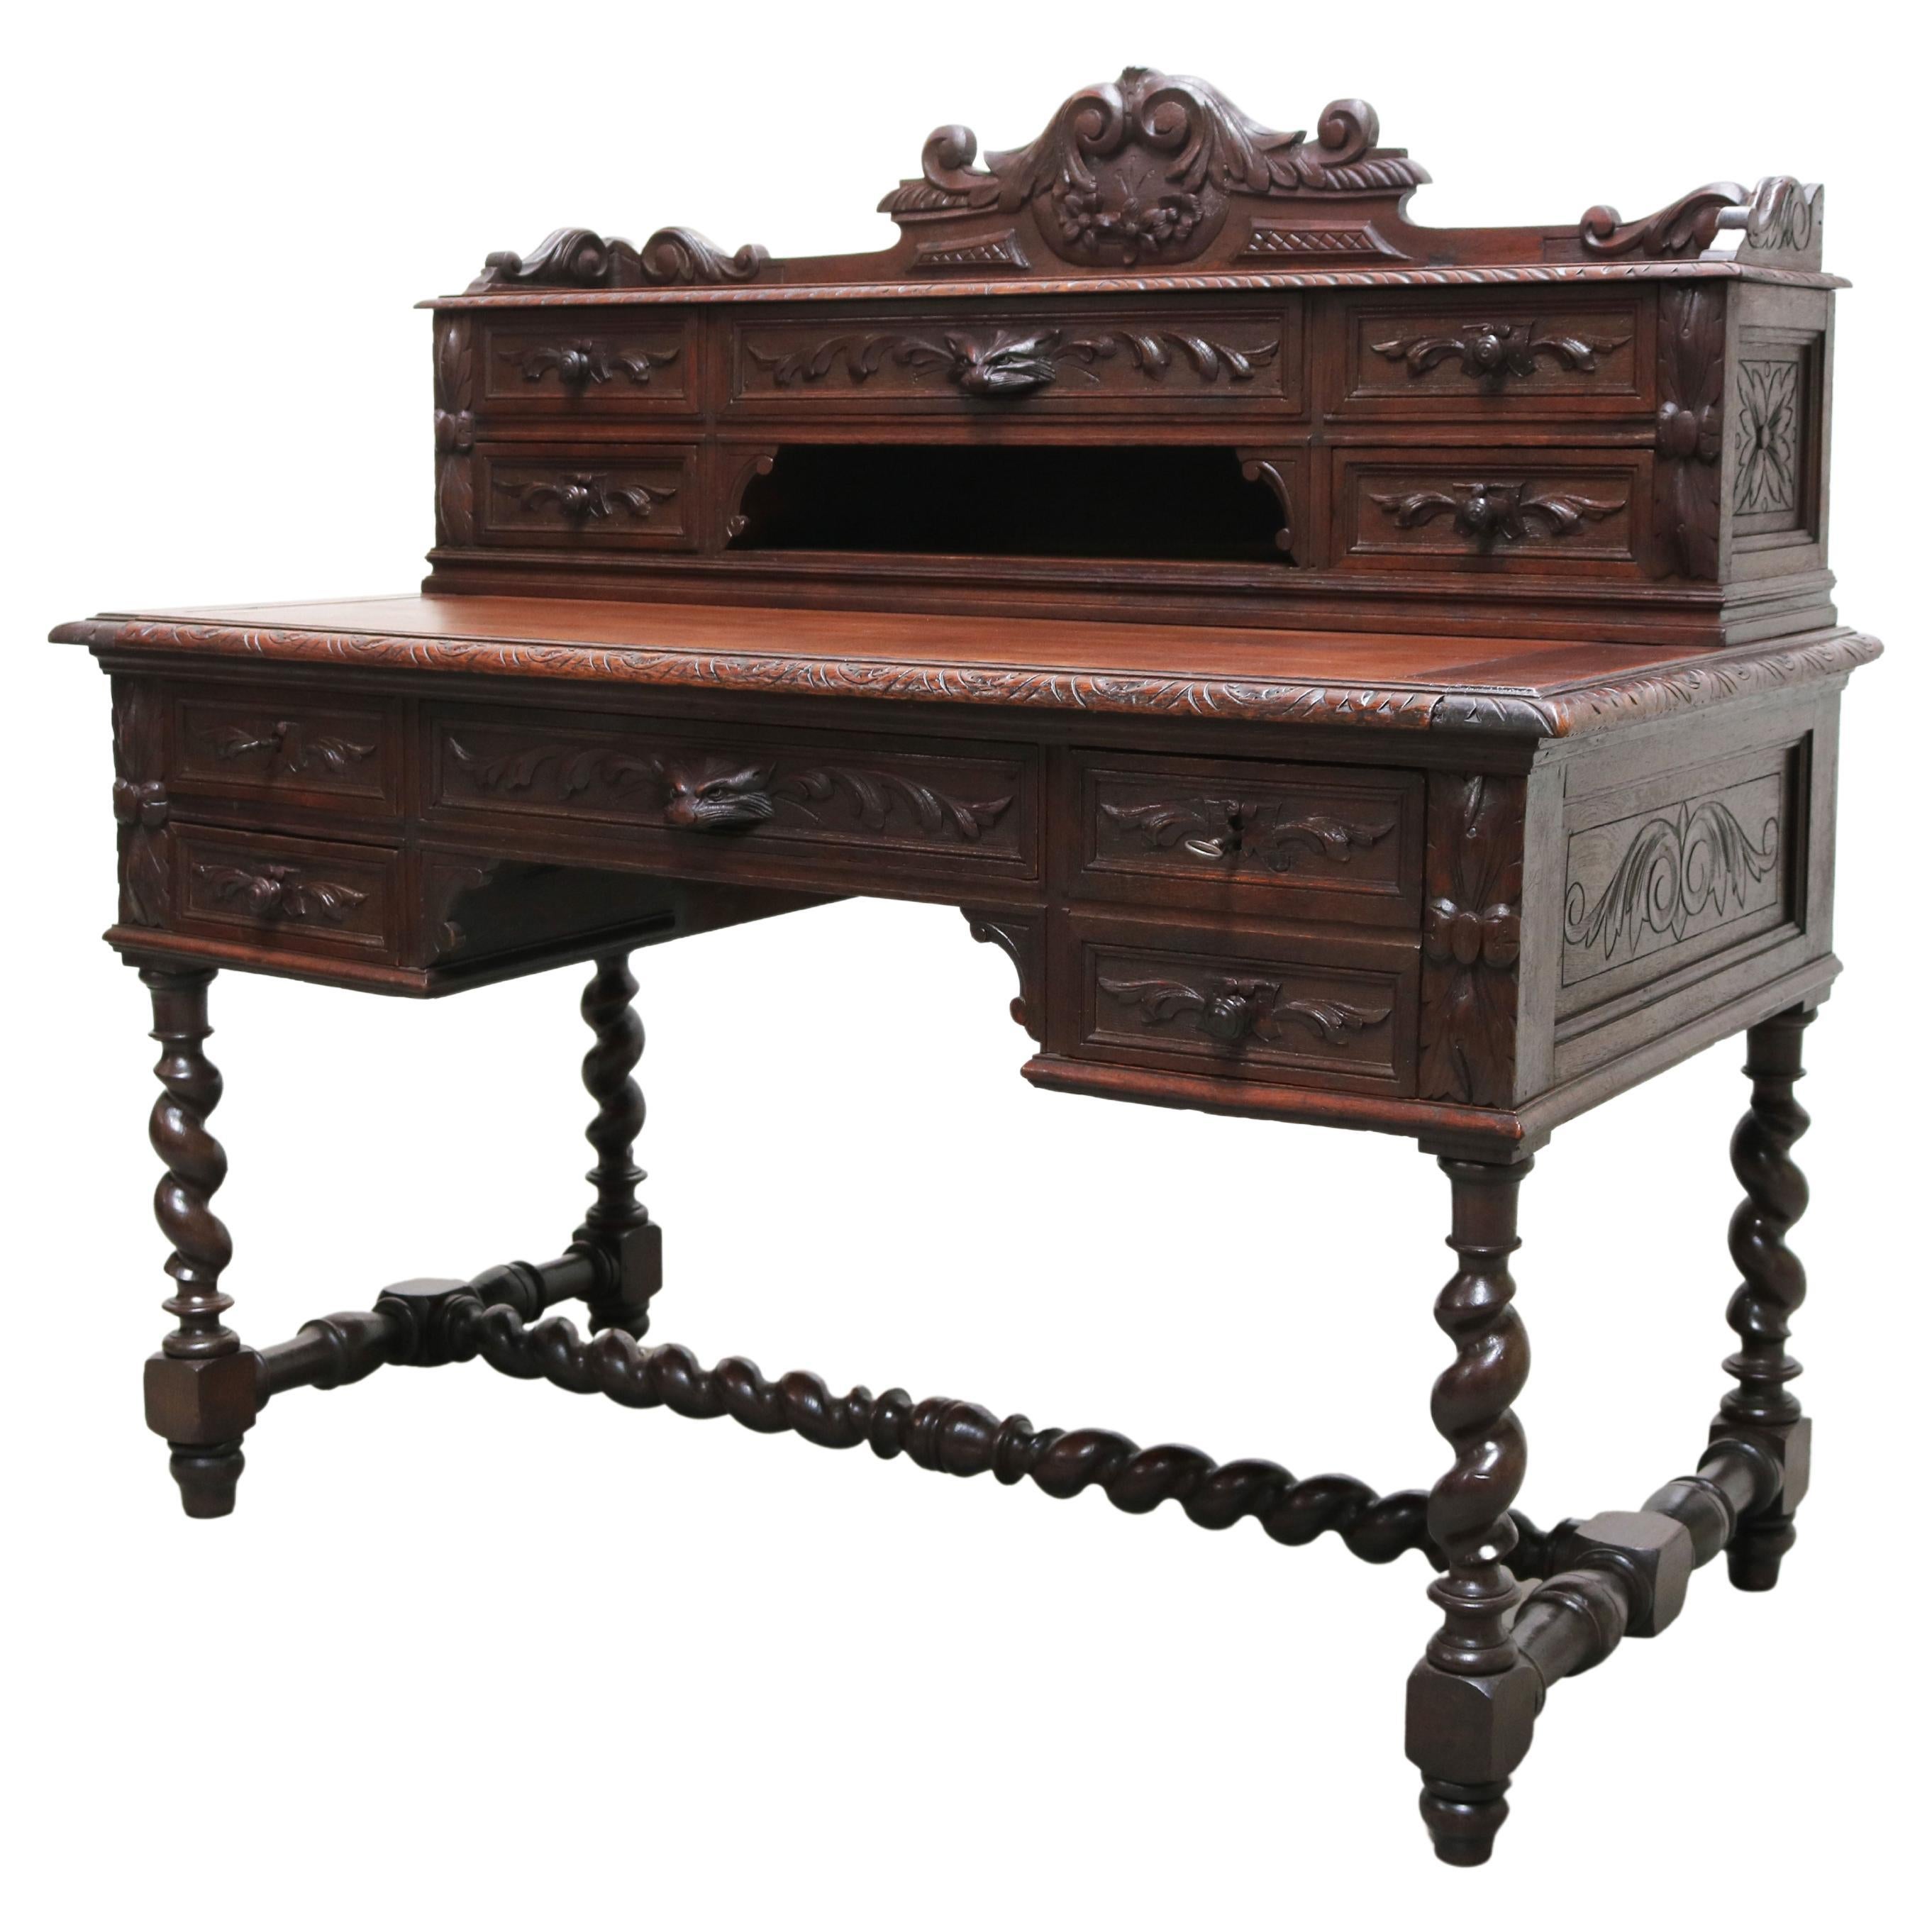 Antique French Renaissance Revive Hunt Desk / Secretaire Barley Twist Oak 19th